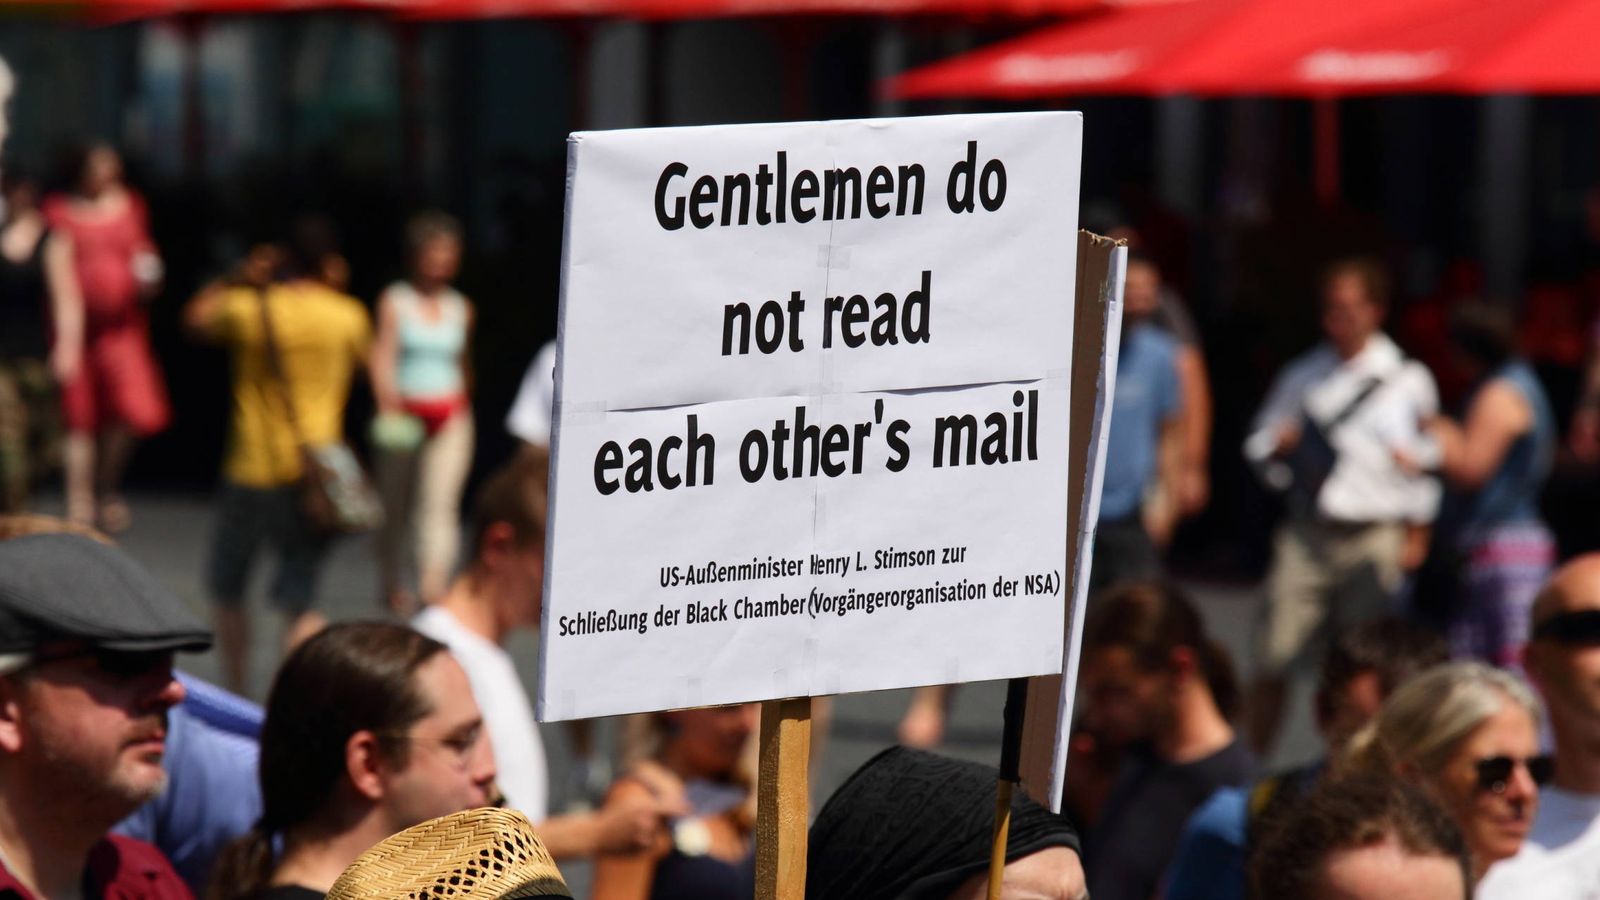 Foto: "Los caballeros no leer los emails de los demás" (Martin Schmitt)